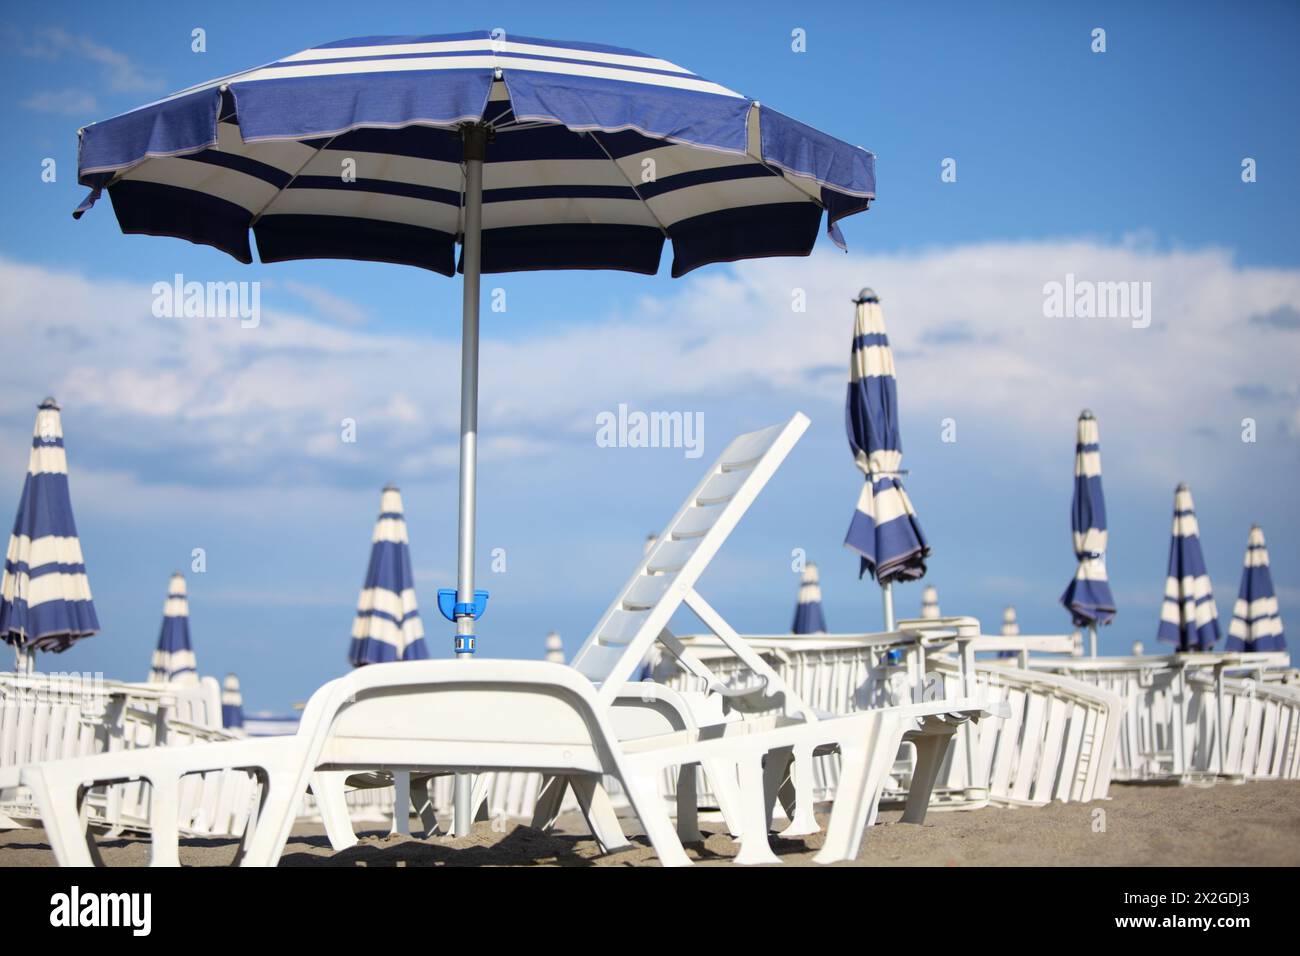 molti lettini bianchi e ombrelloni blu sulla sabbia della spiaggia. cielo blu e nuvole. profondità di campo ridotta Foto Stock